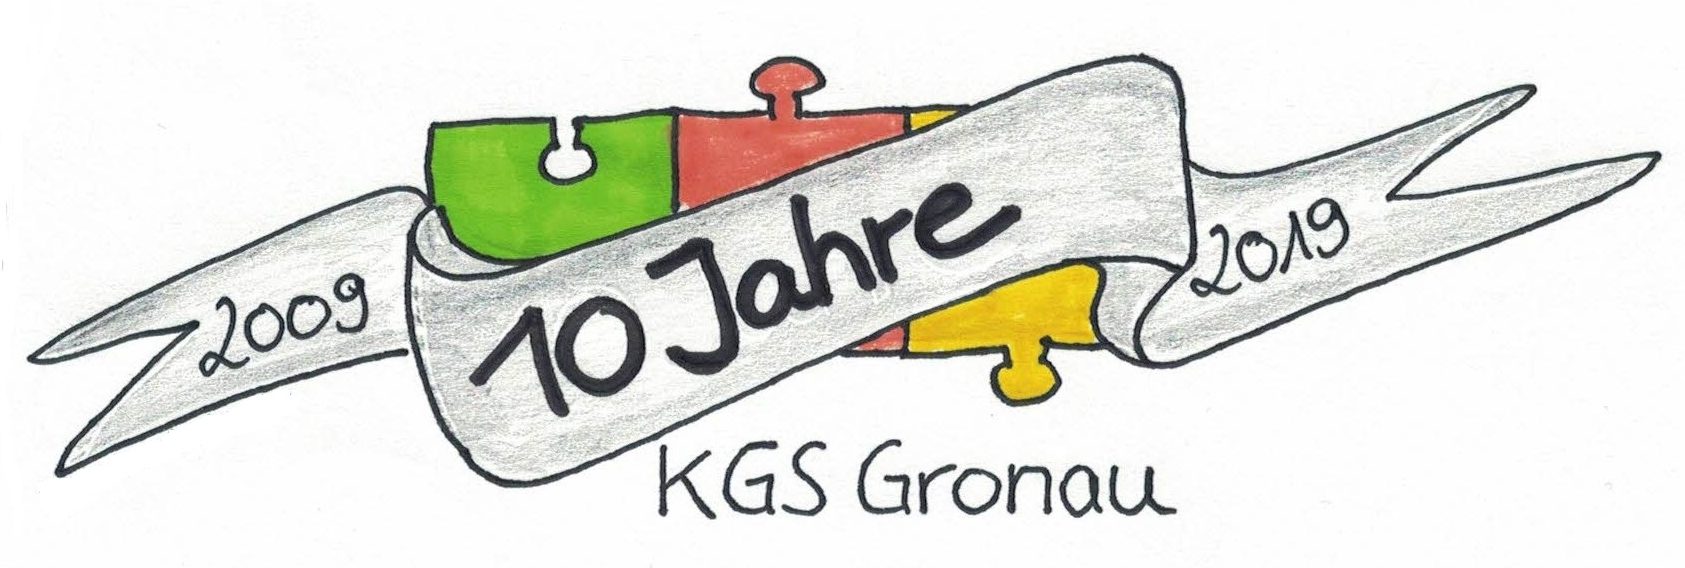 KGS Gronau - 10 Jahre Jubiläum